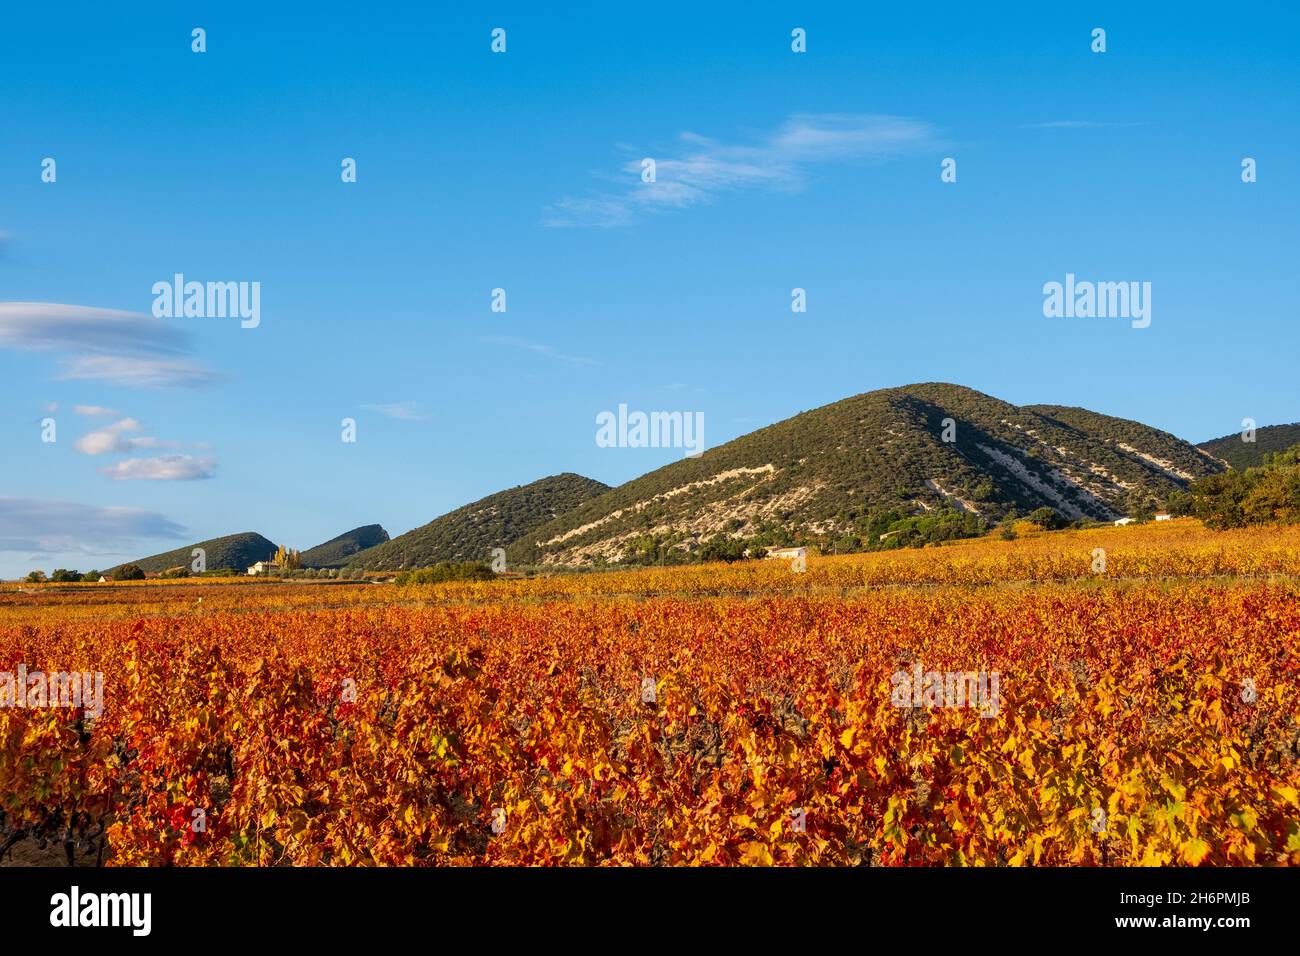 Cotes de Rhone vineyards meet the hills of Parc Naturel Régional des Baronnies Provençales, Stock Photo